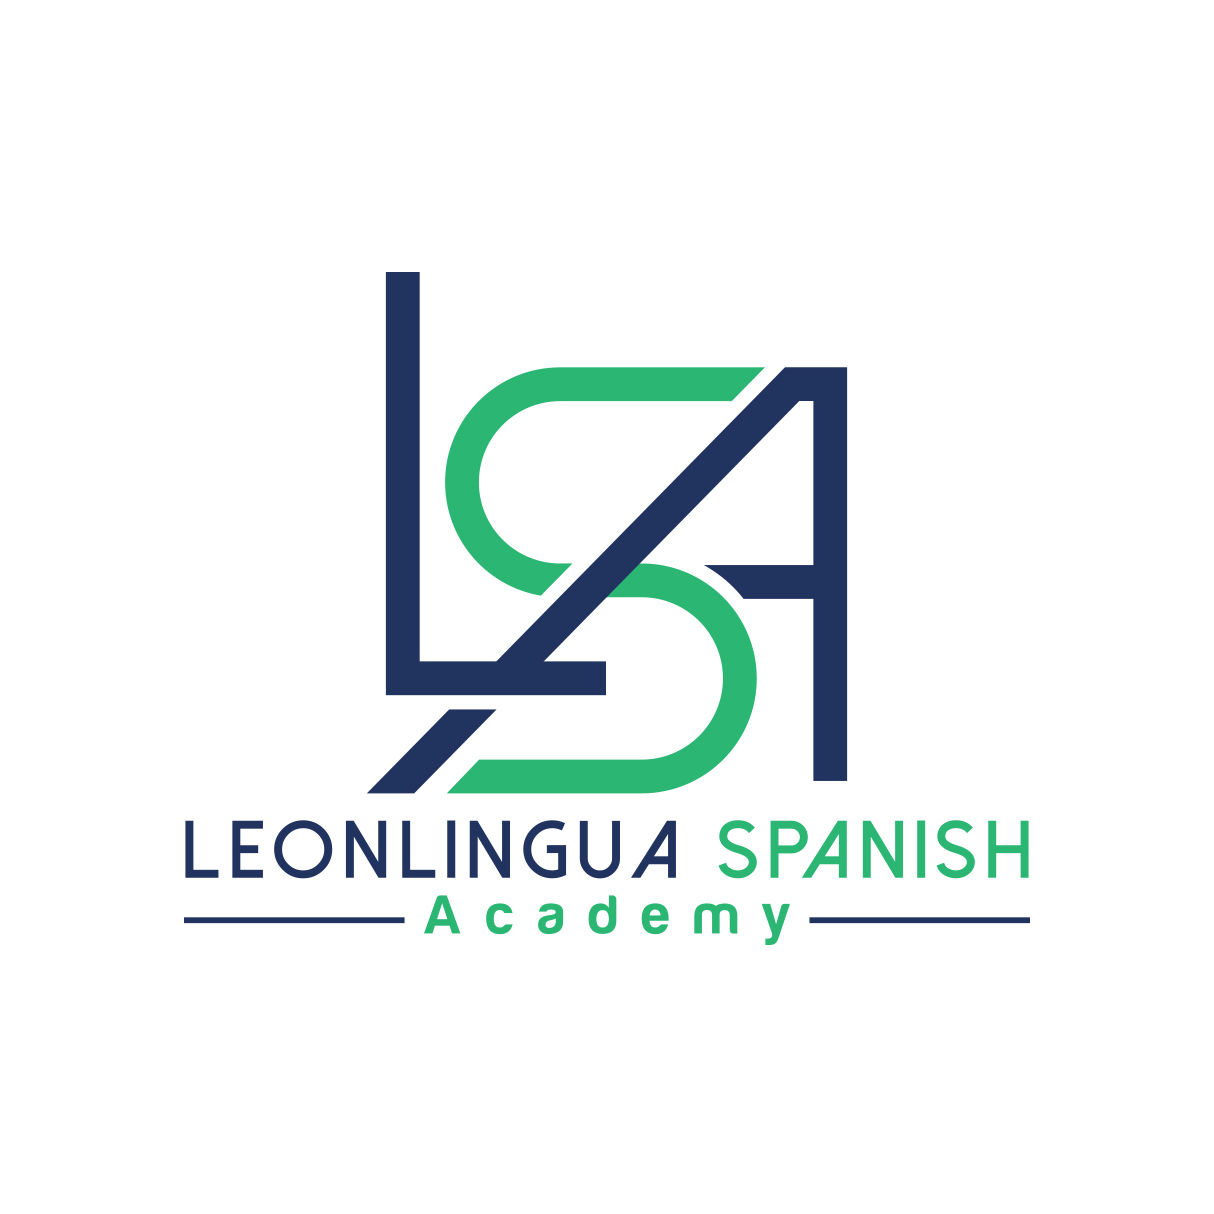 Leonlingua Spanish Academy